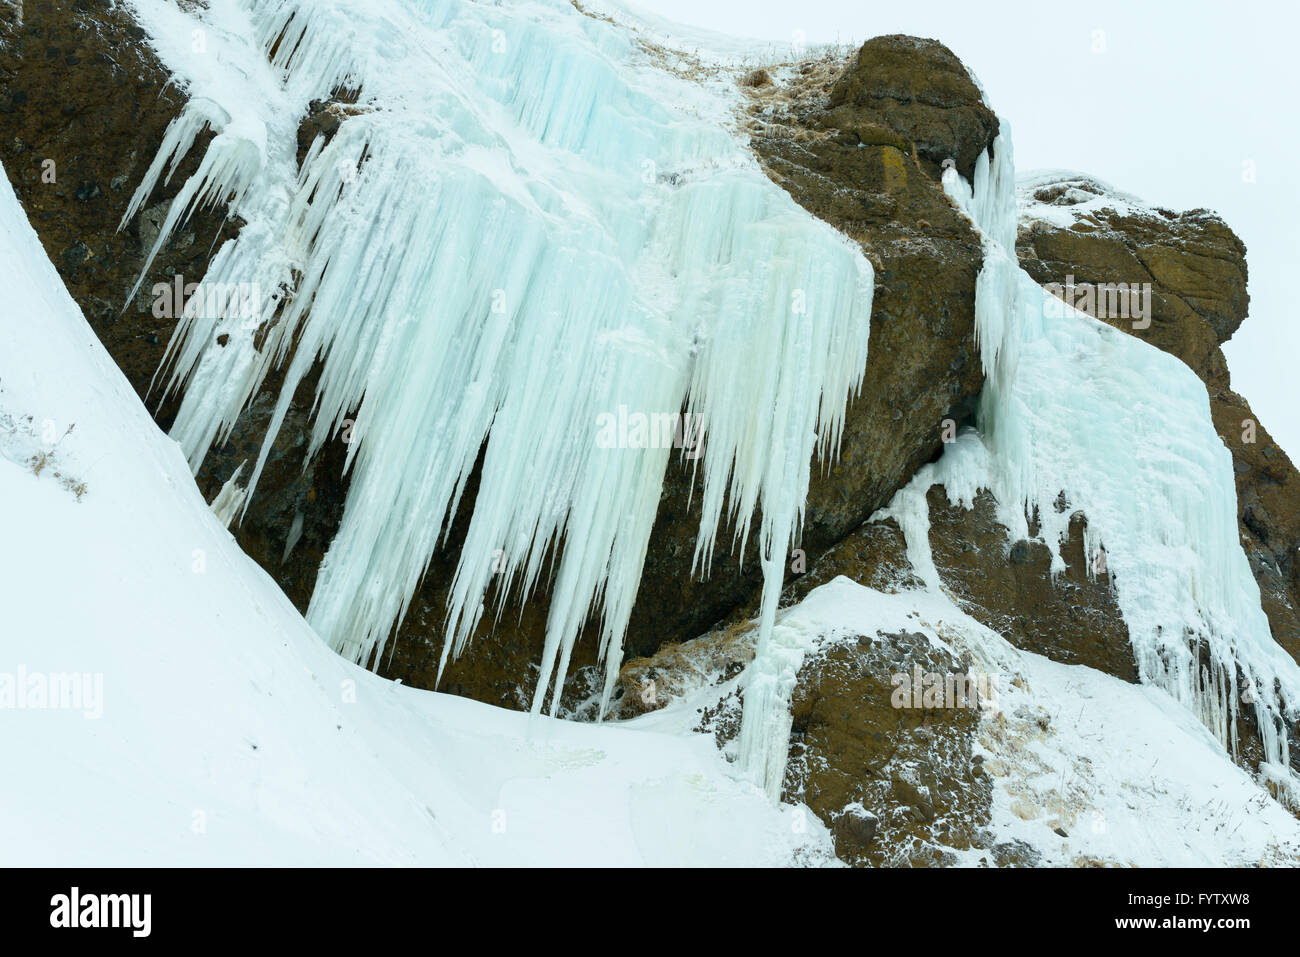 Chute de glace, l'île de Sakhaline, en Russie. Banque D'Images